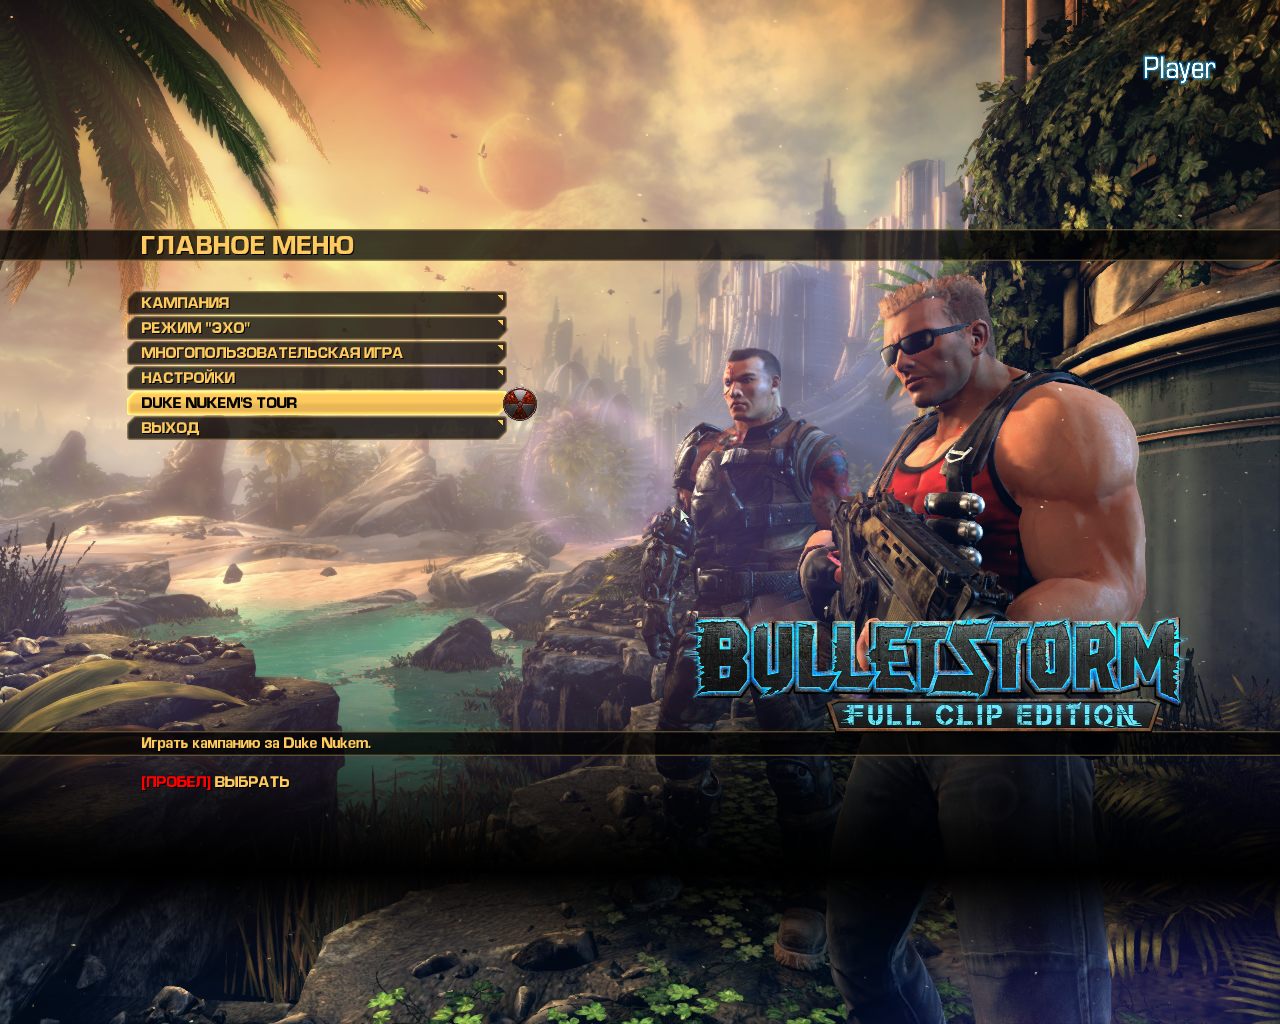 Установить главное меню. Игра Bulletstorm 2017. Главное меню игры. Игра Bulletstorm Full clip Edition. Игровое меню популярных игр.